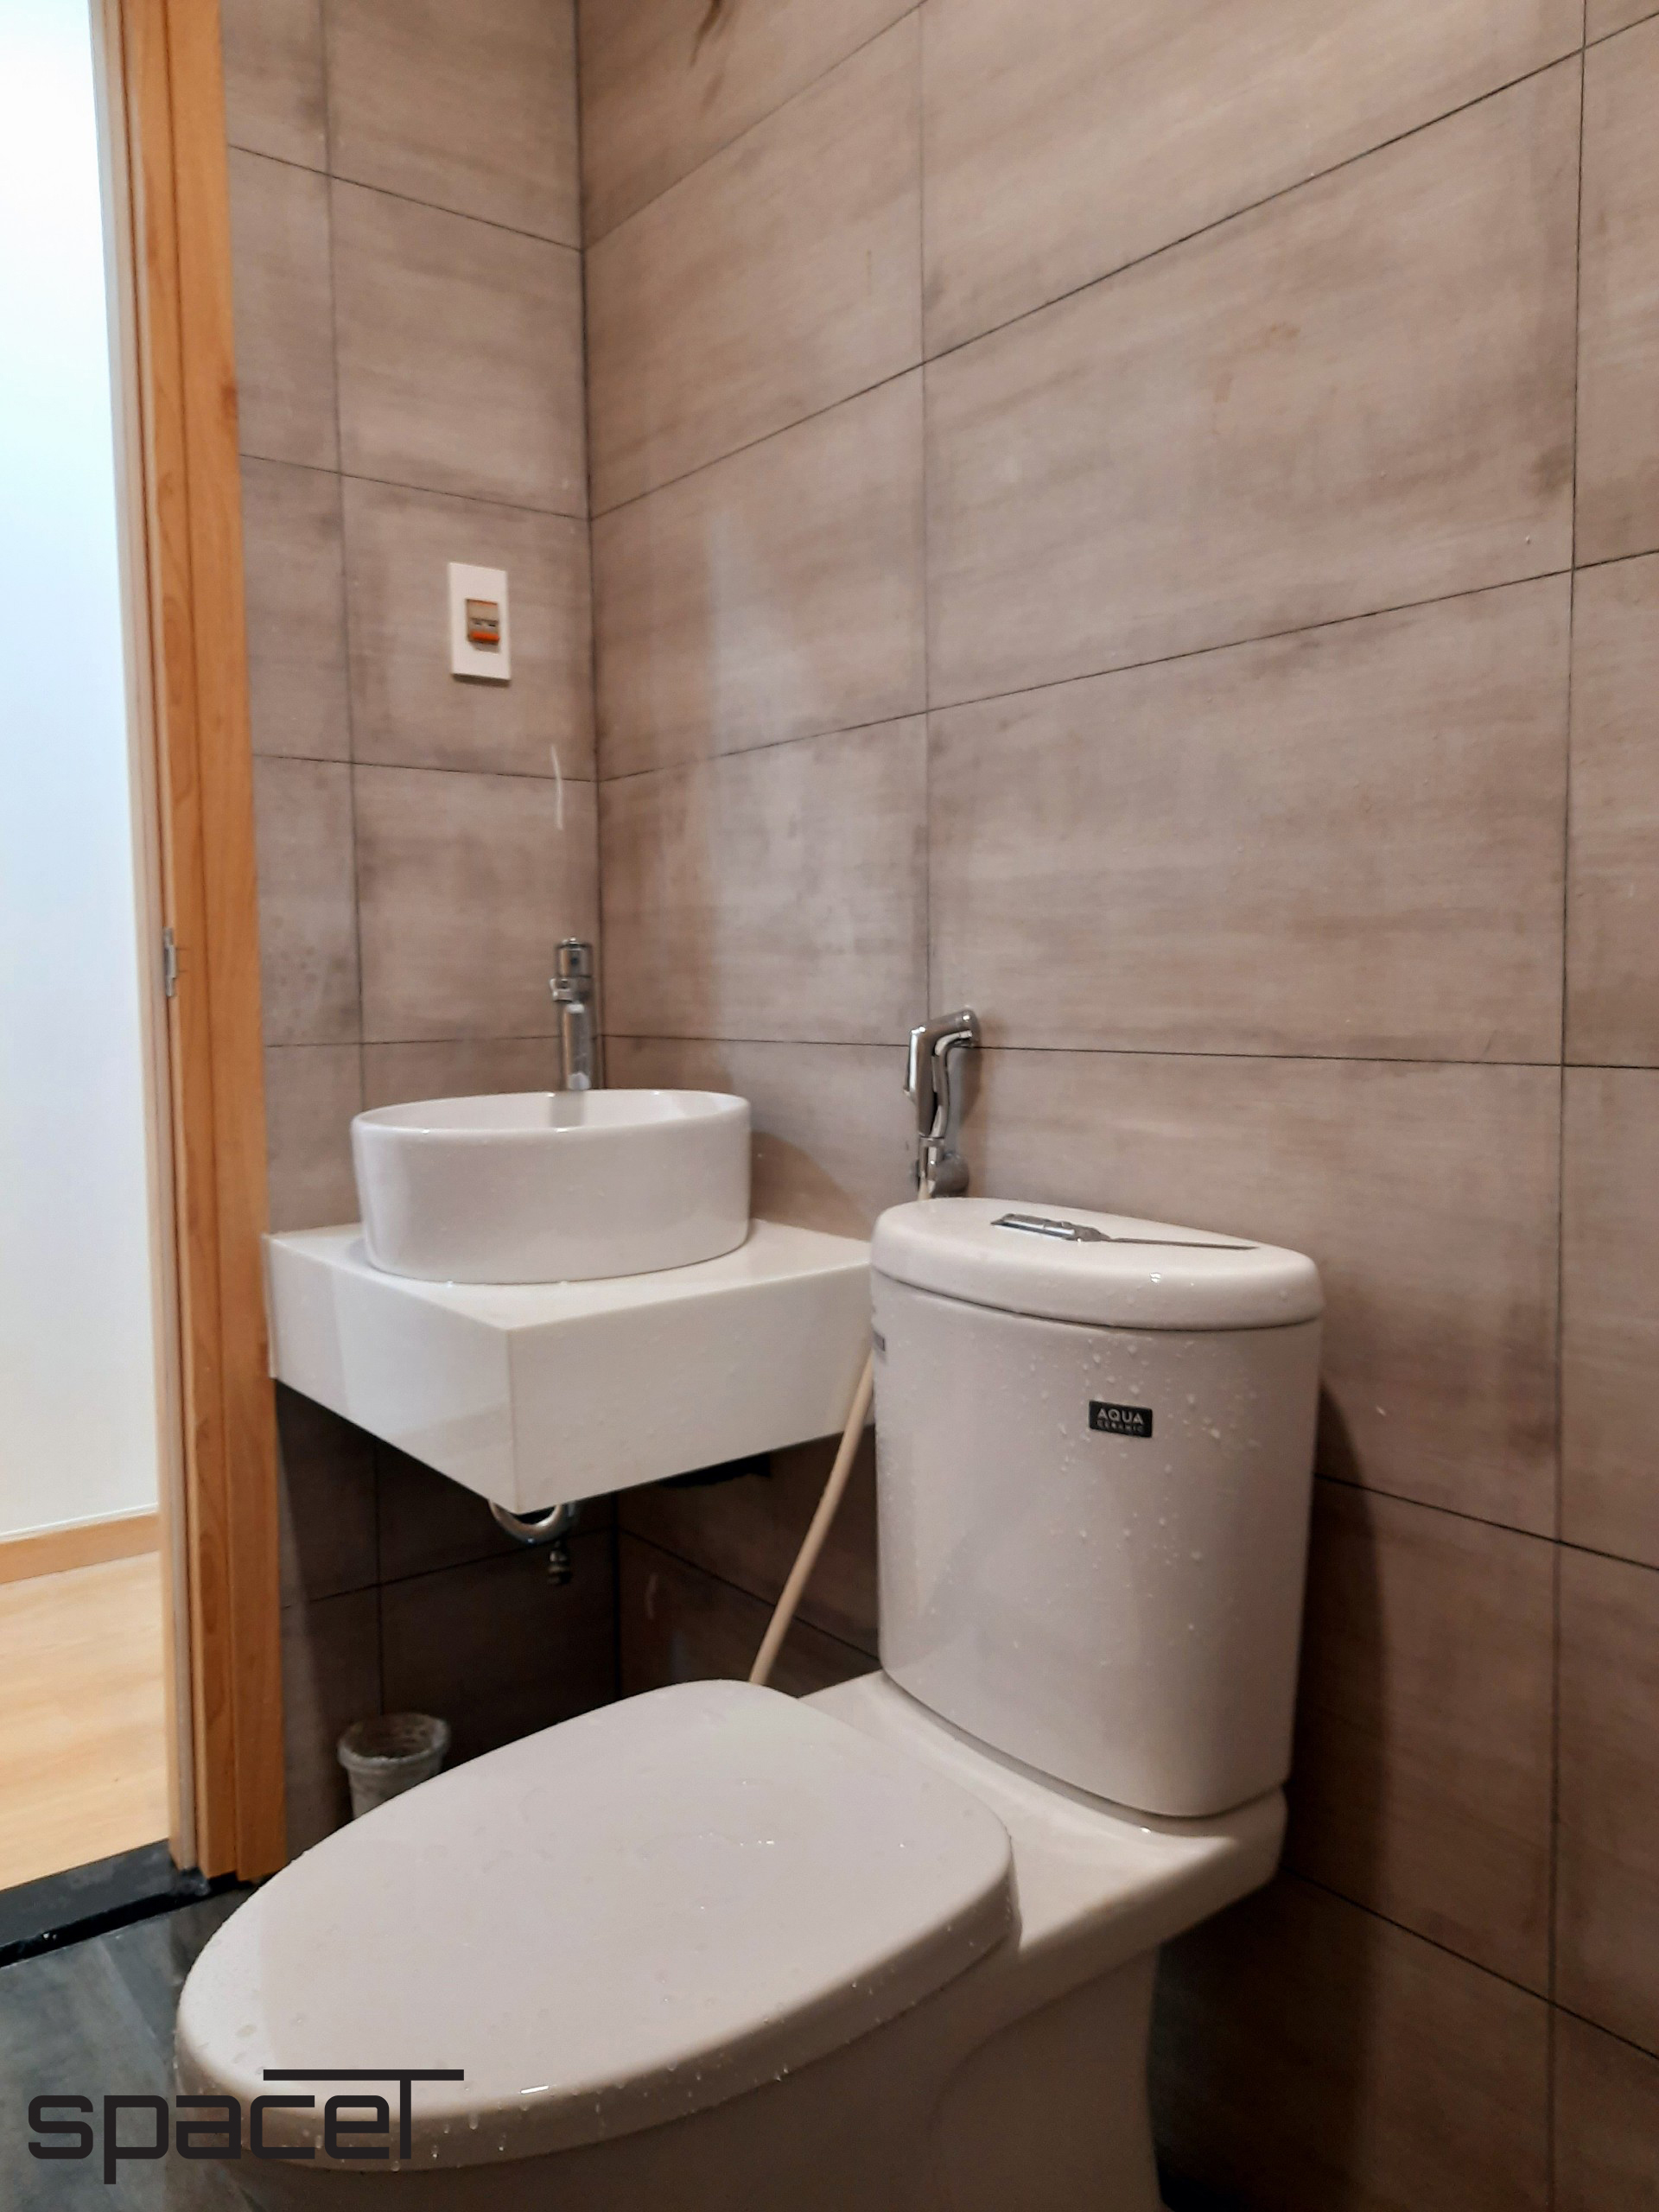 Phòng tắm, phong cách Hiện đại Modern, hoàn thiện nội thất, căn hộ chung cư Minh Thành